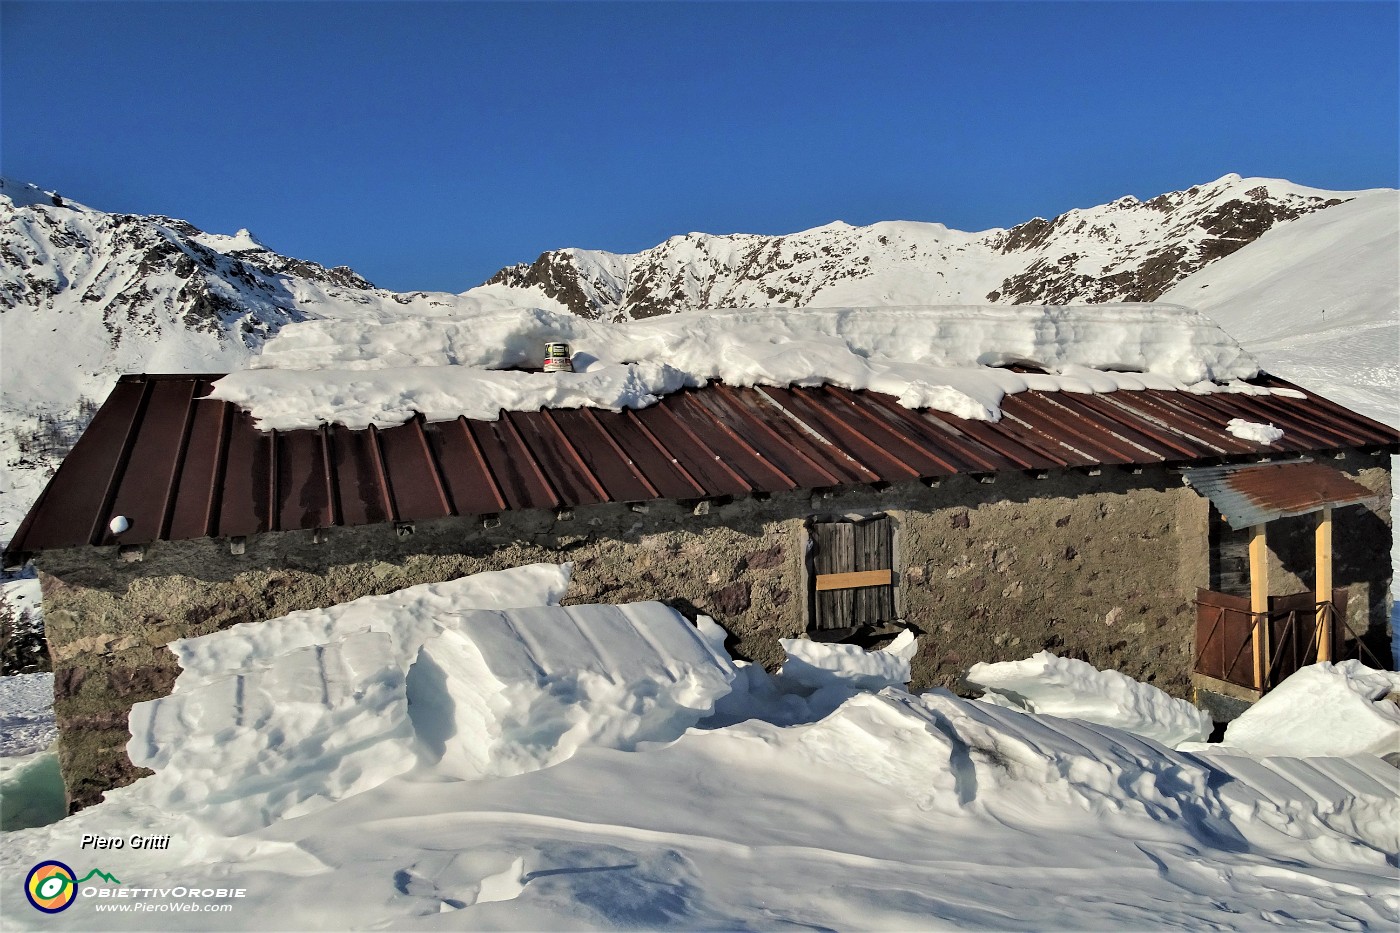 25 Casera Alpe Aga (1759 m) si scrolla di dosso la tanta neve....JPG